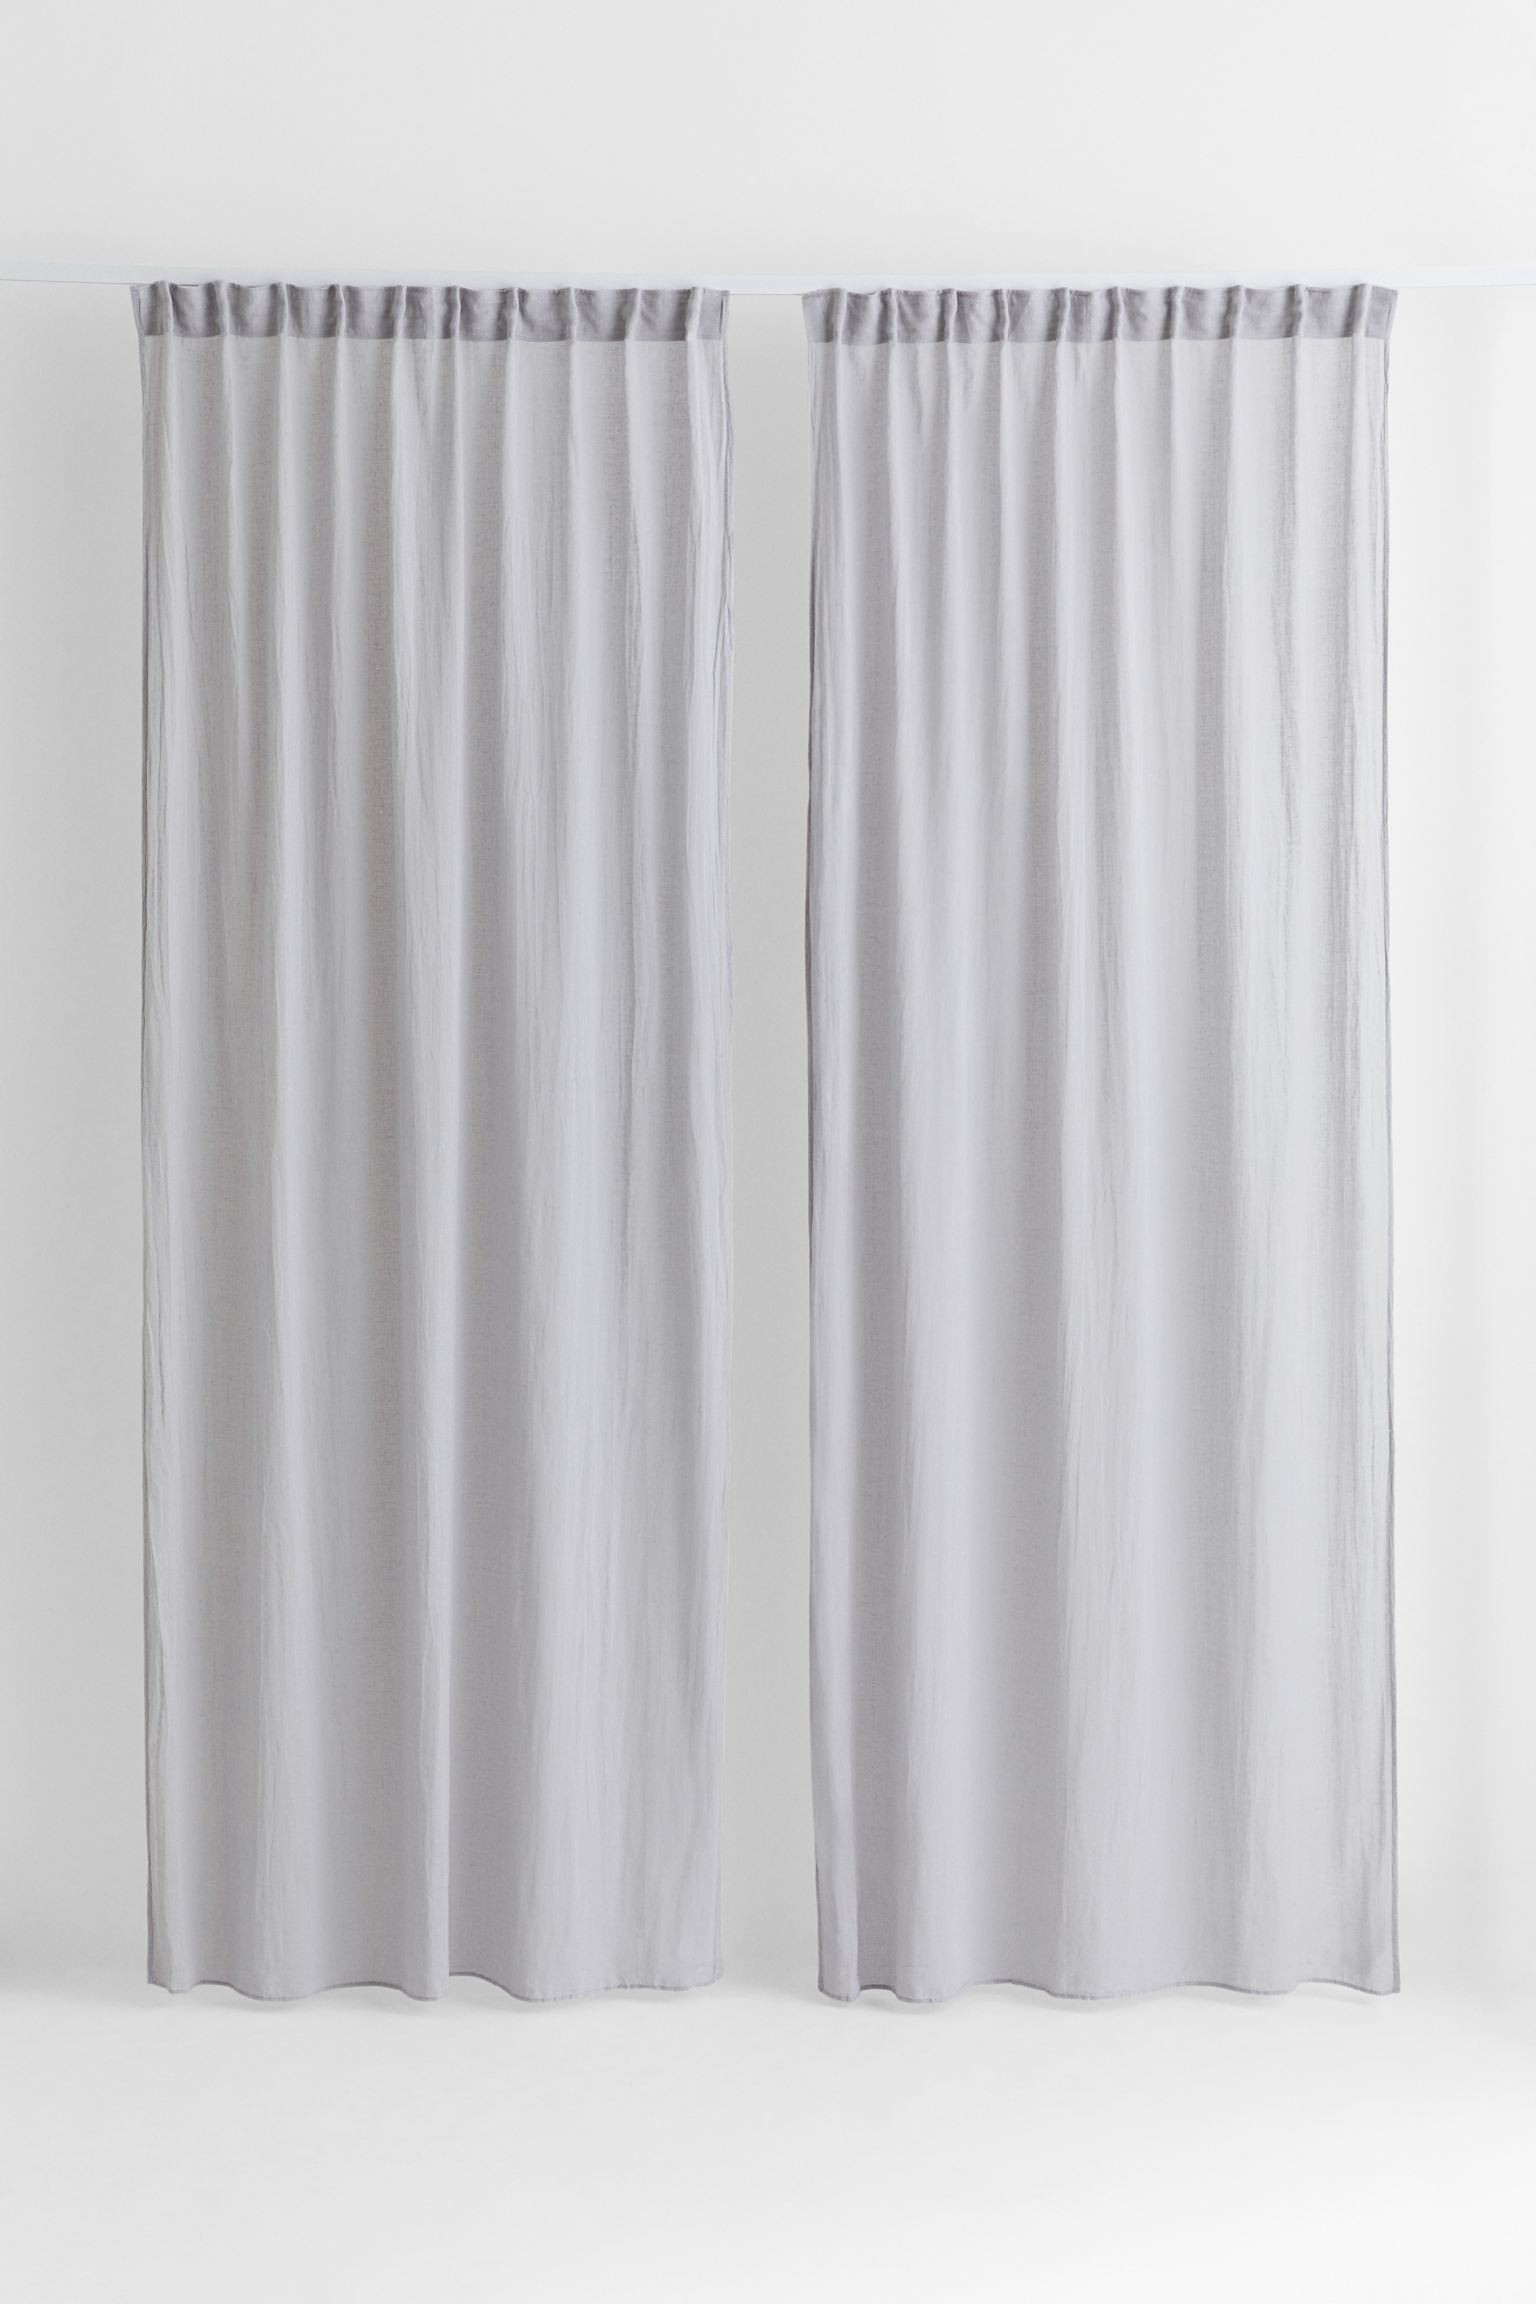 H&M Home Багатофункціональна штора з суміші льону, 2 шт., світло сірий, 150x300 1039976003 | 1039976003